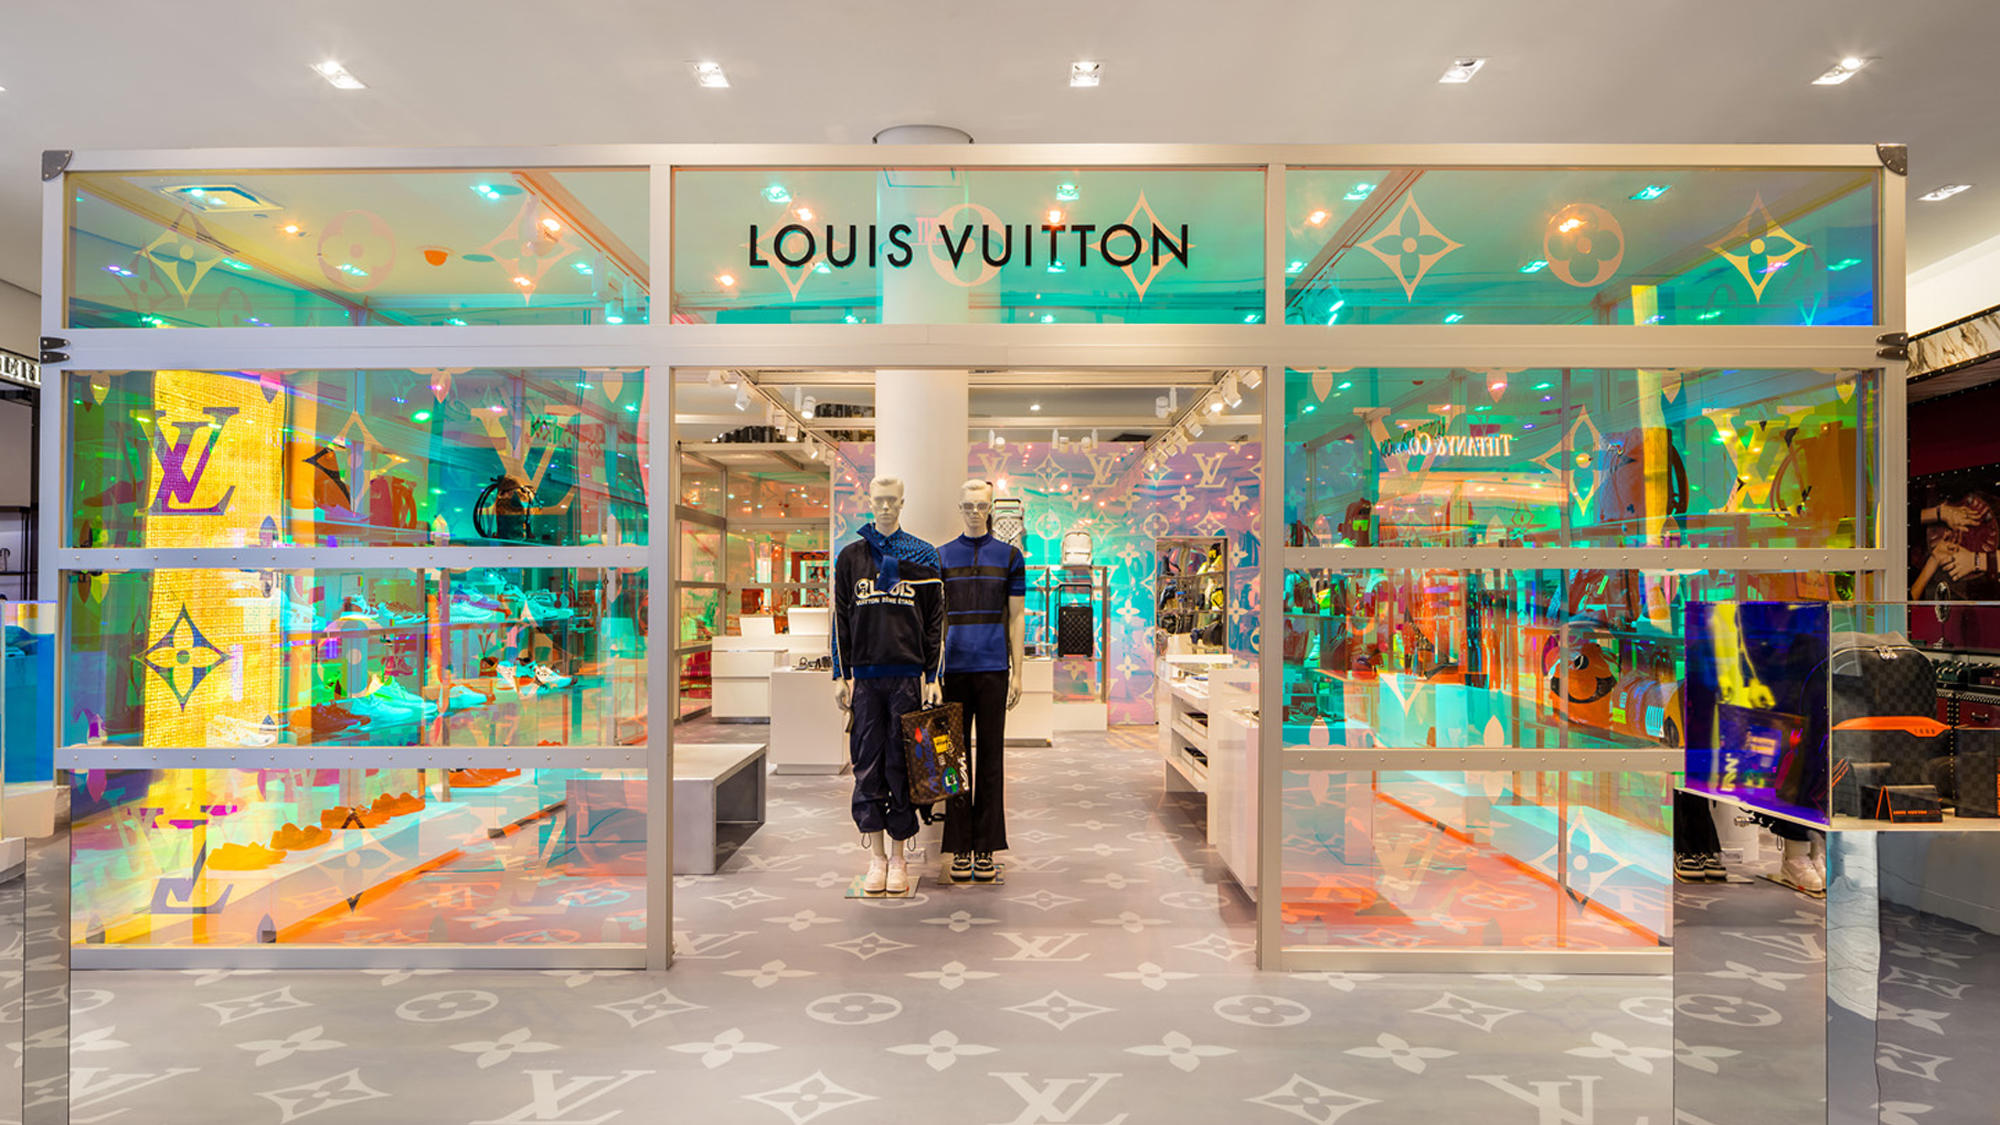 Louis Vuitton Toronto Holt Renfrew Yorkdale, Toronto ON | Ourbis